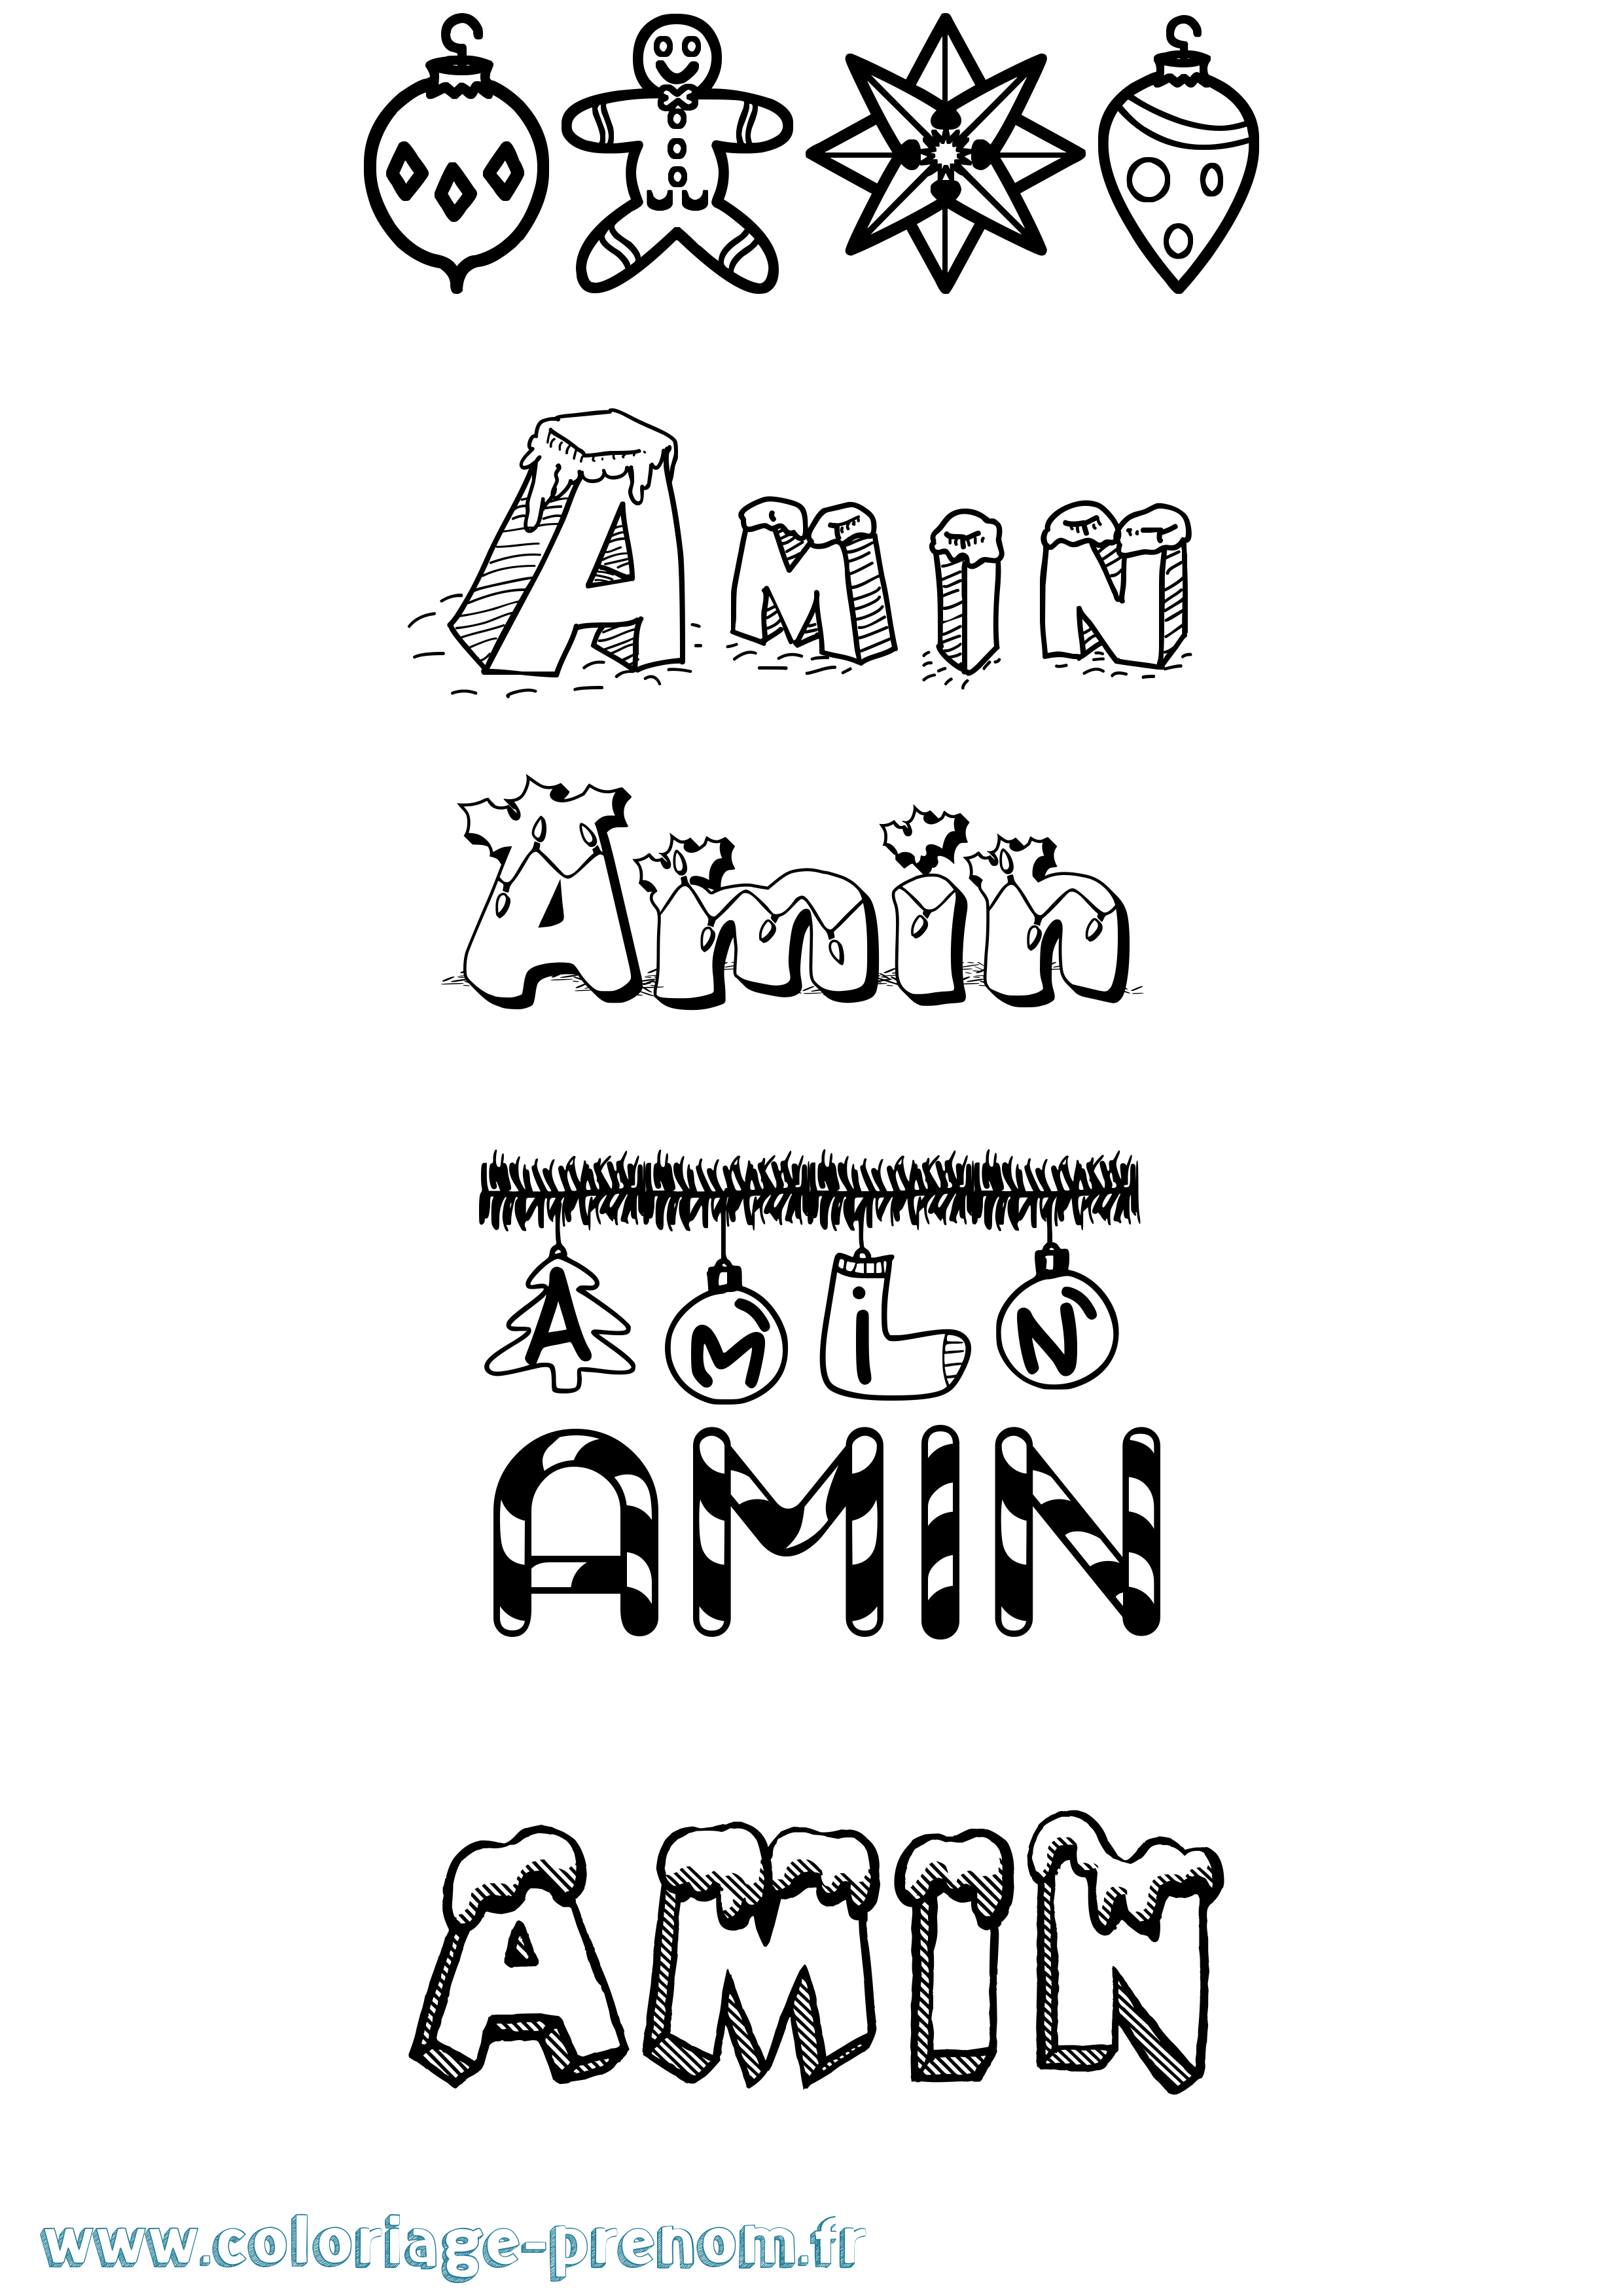 Coloriage prénom Amin